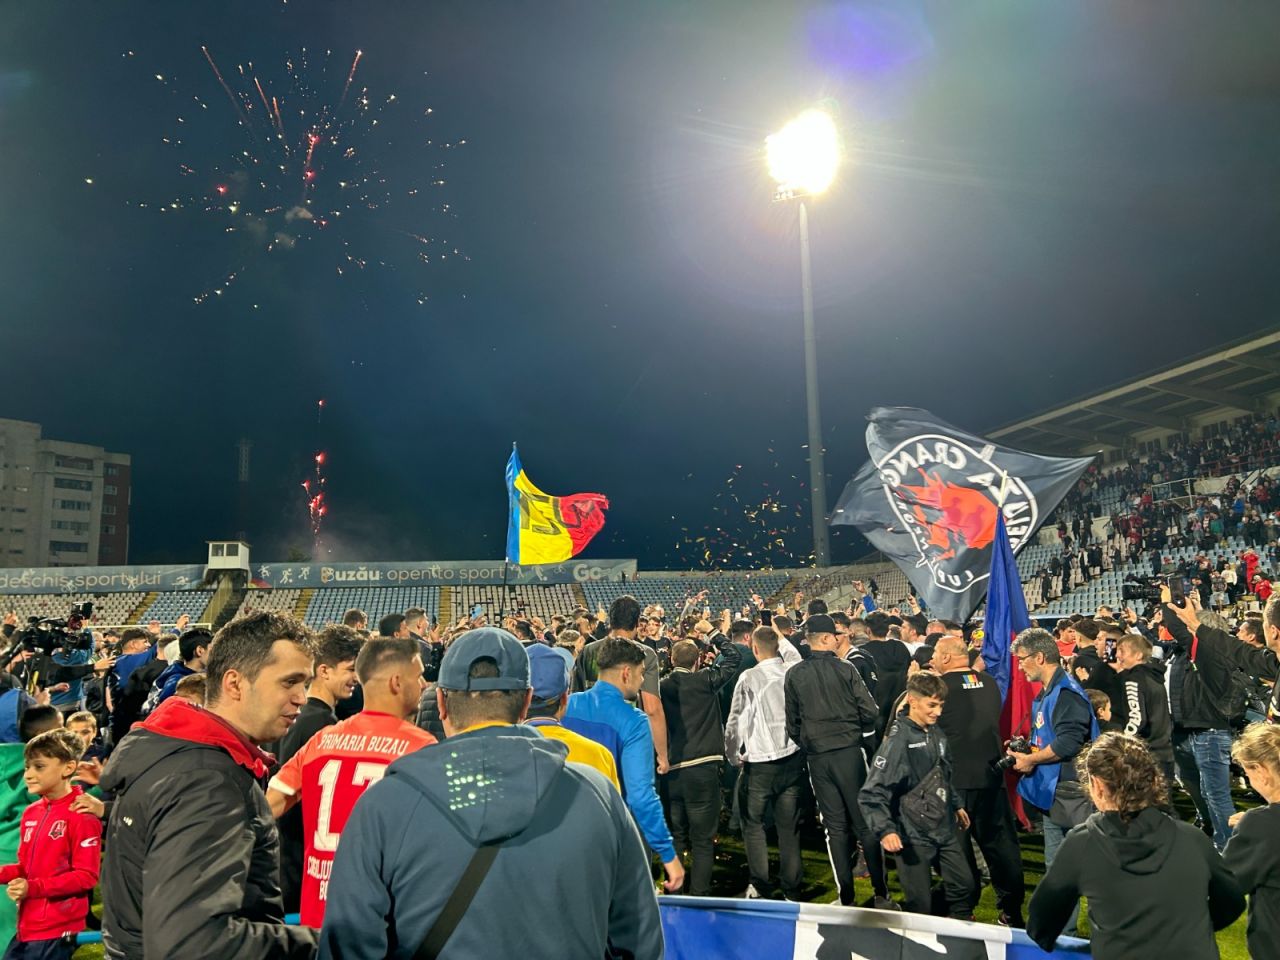 Sărbătoare la Buzău! Fotbaliștii s-au bucurat alături de fani în urma promovării istorice. Vali Dumitrache: ”Am muncit un an pentru asta”_13